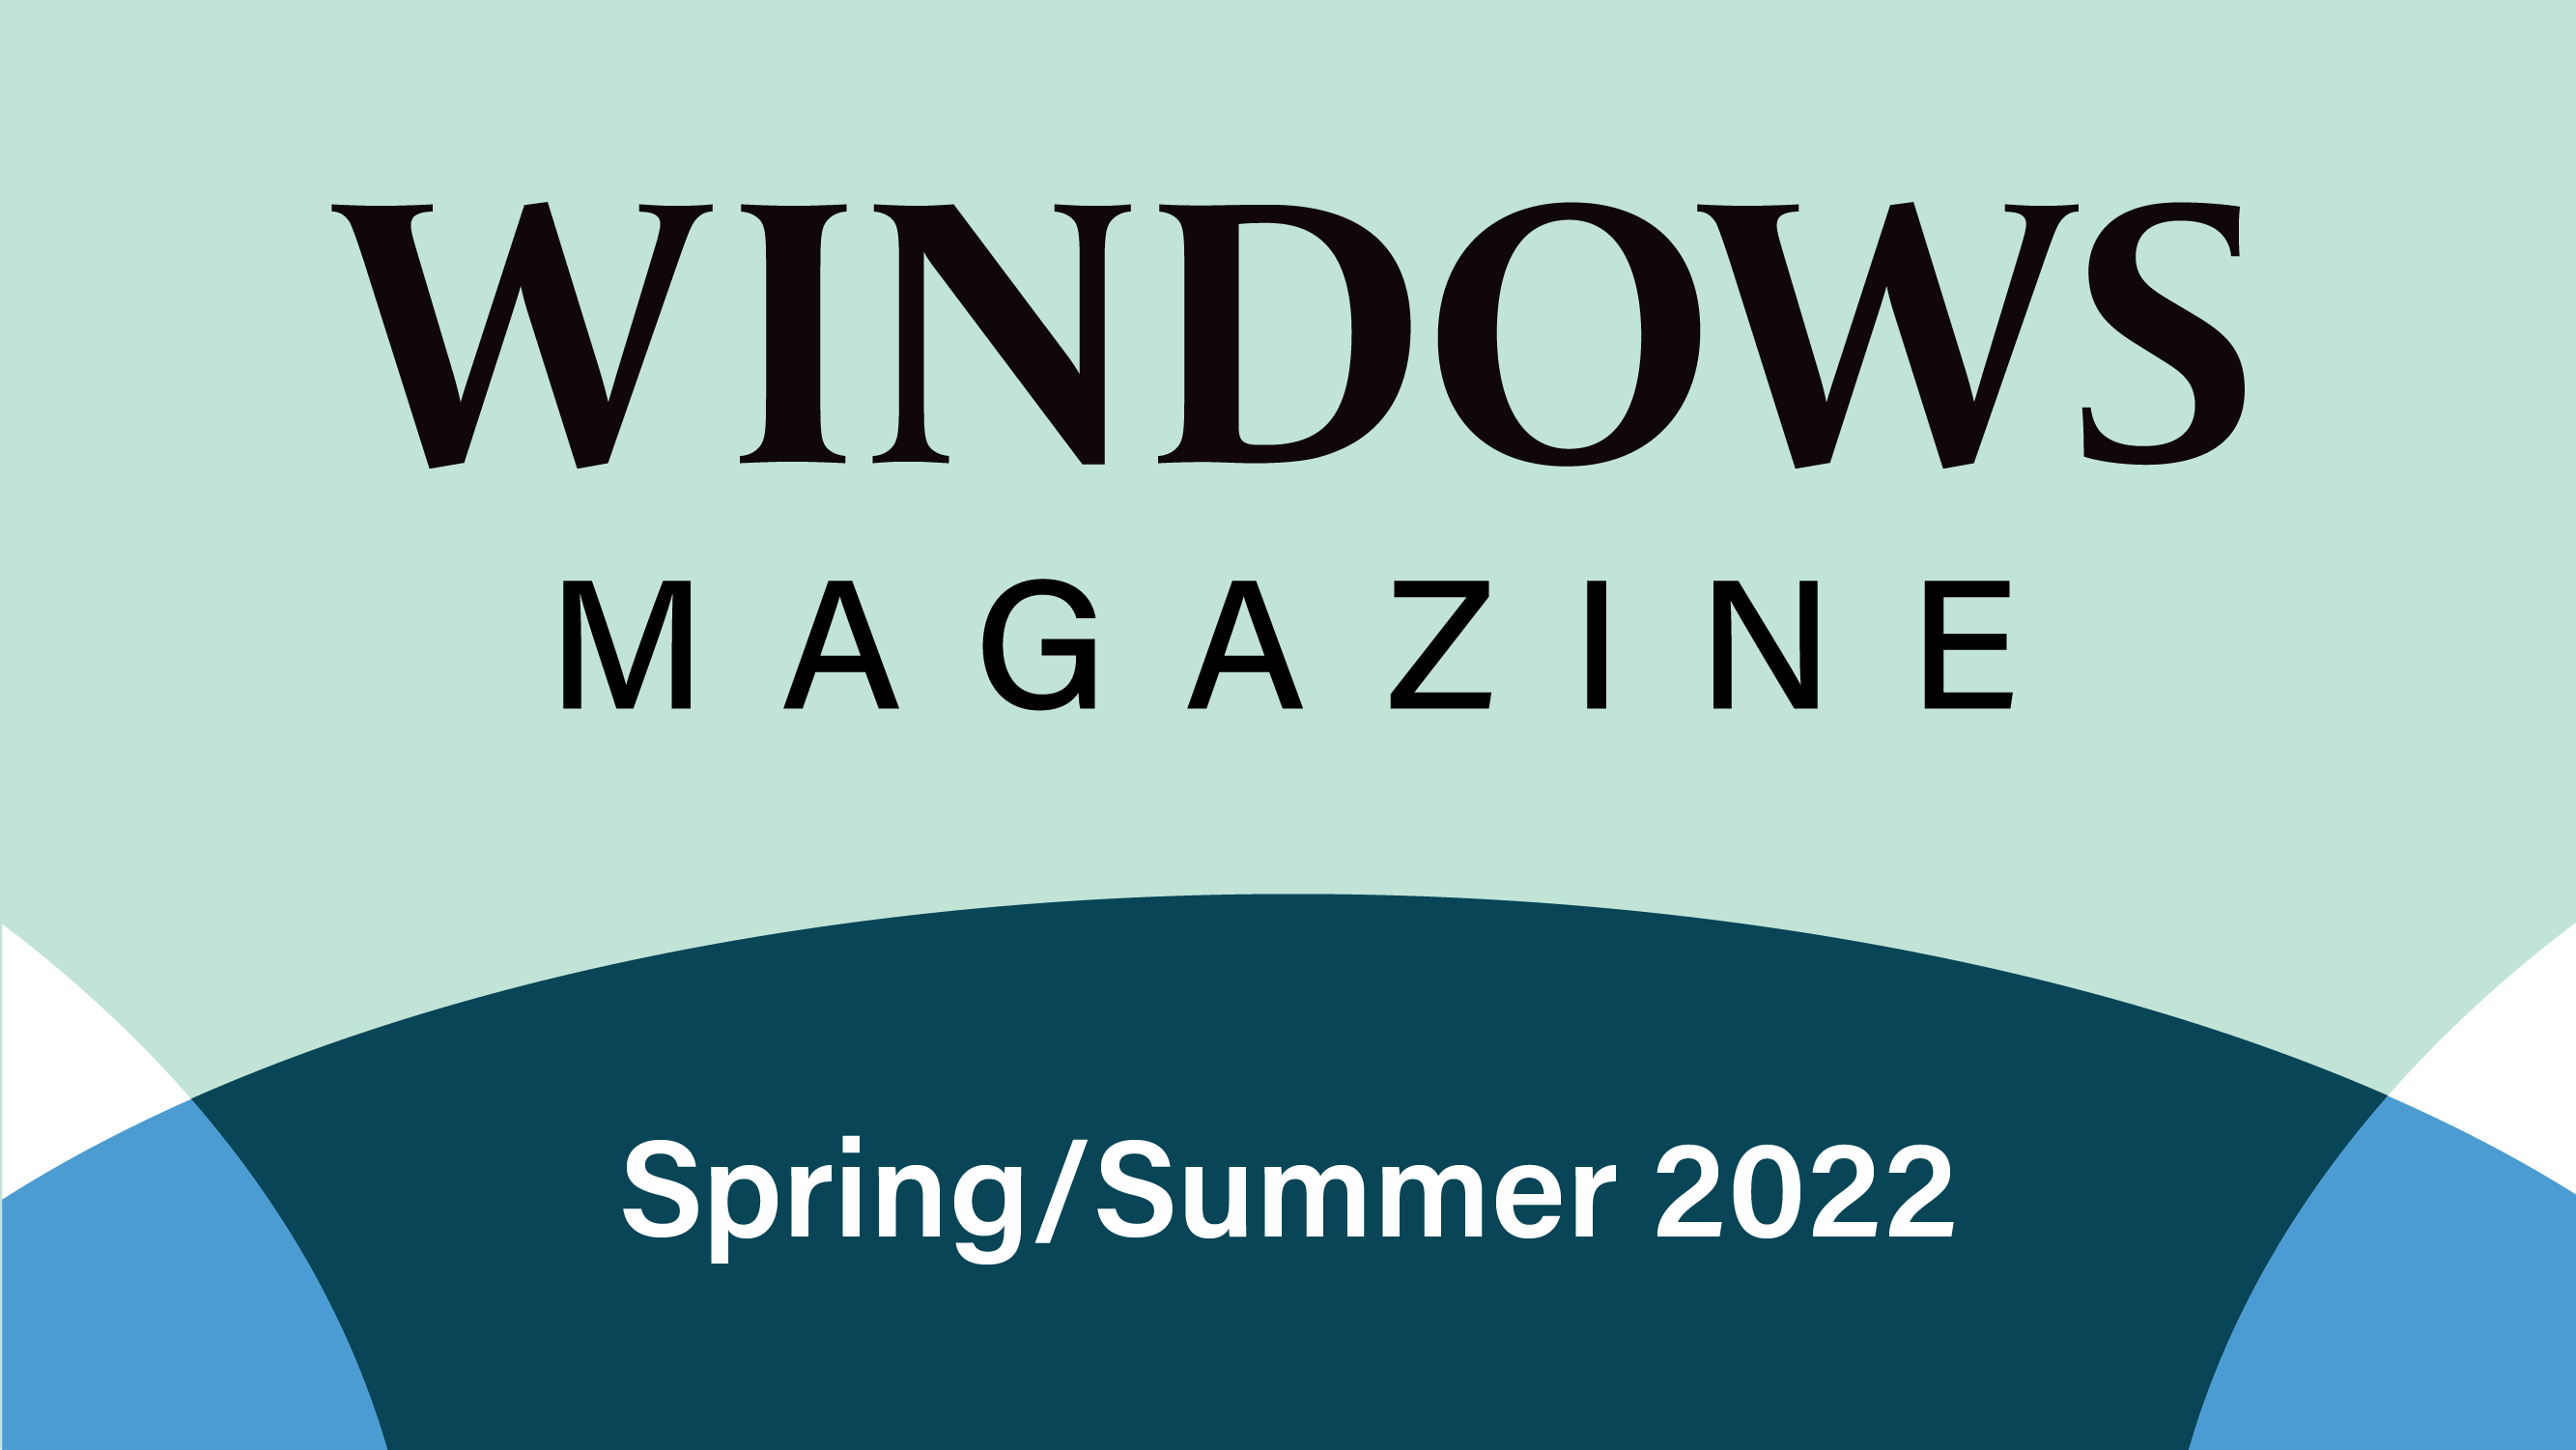 Windows Magazine Spring/Summer 2022